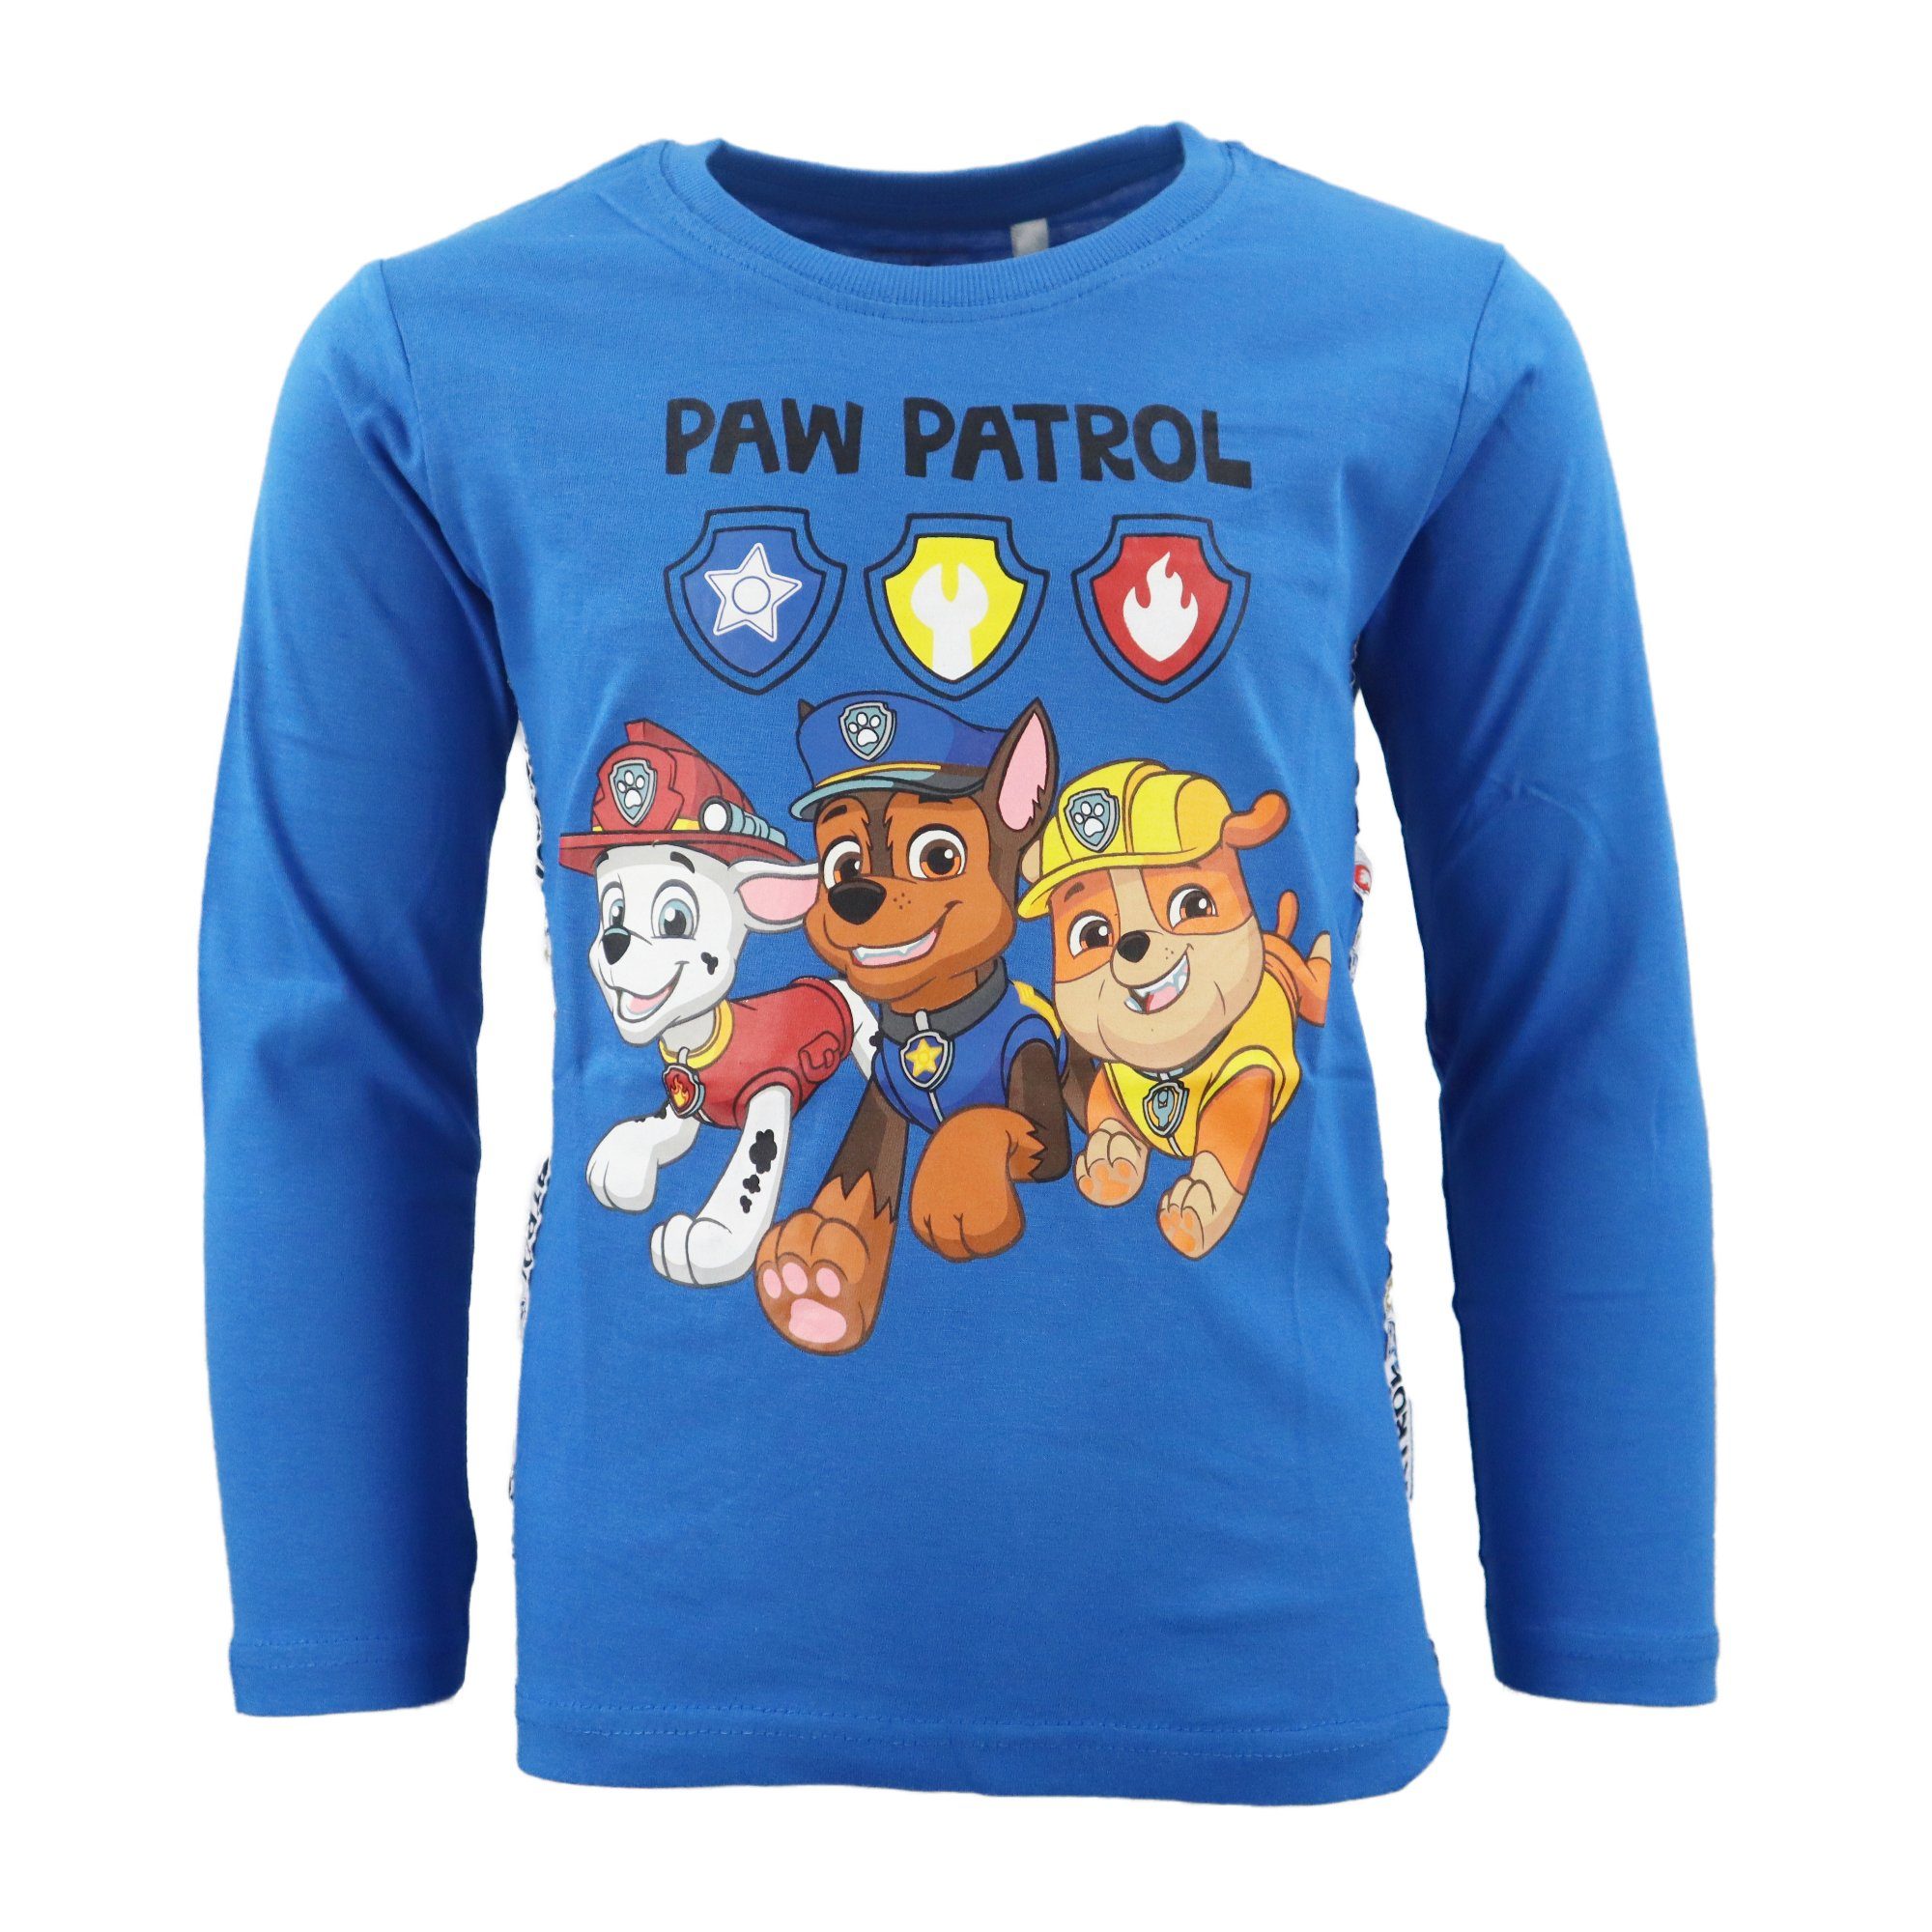 PAW PATROL Langarmshirt Paw Patrol Chase Marshall Kinder Shirt Gr. 98 bis 128, 100% Baumwolle Blau | Rundhalsshirts